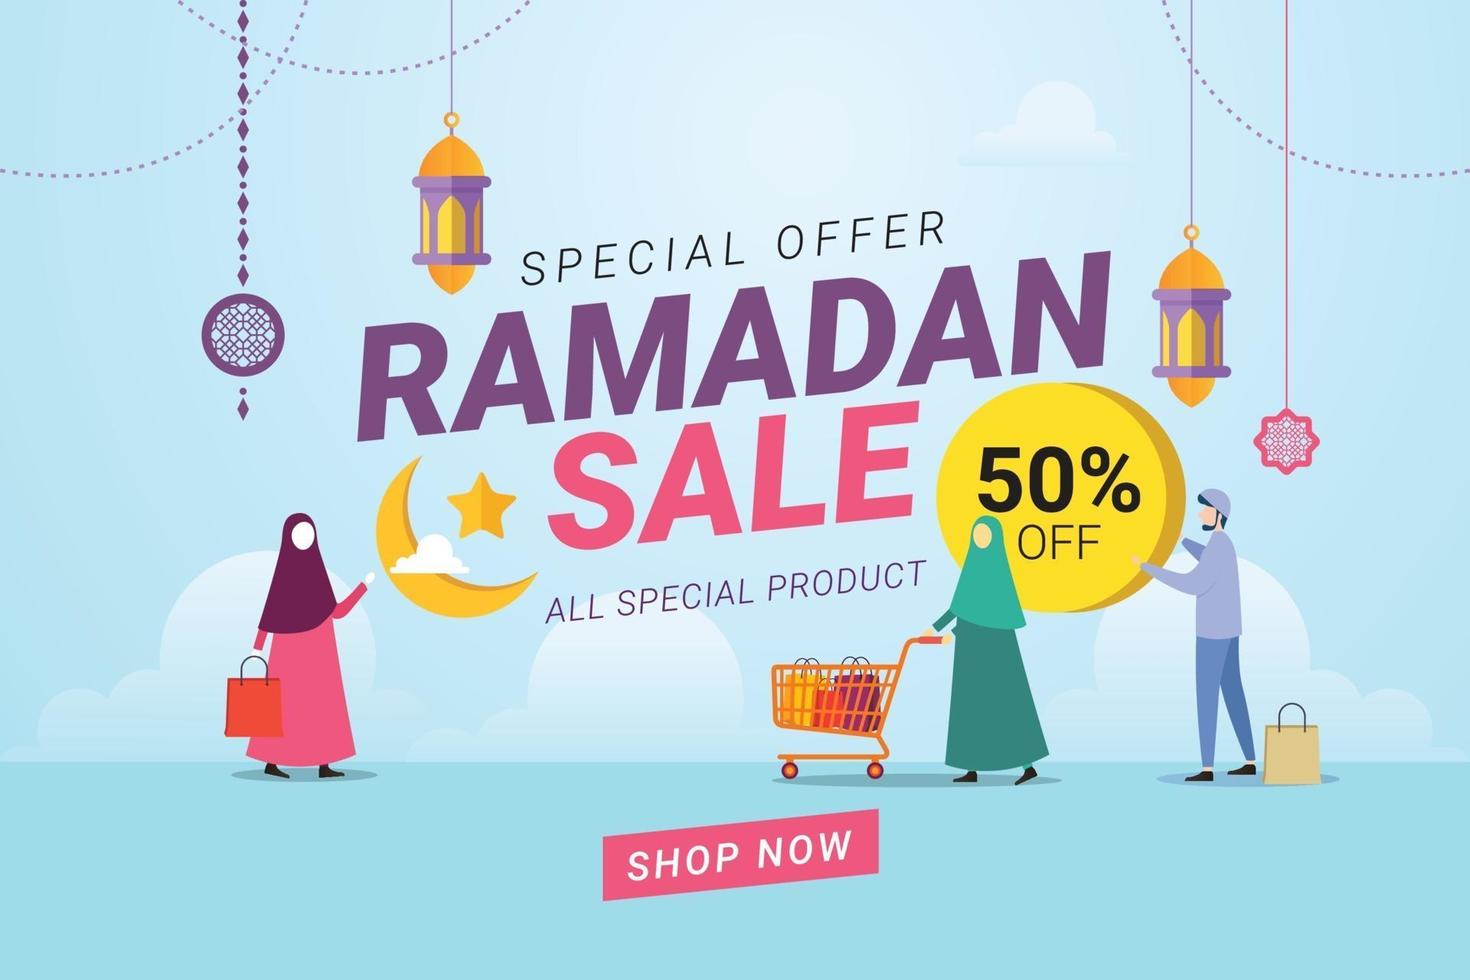 promozione dello sconto del banner di vendita del ramadan vettore